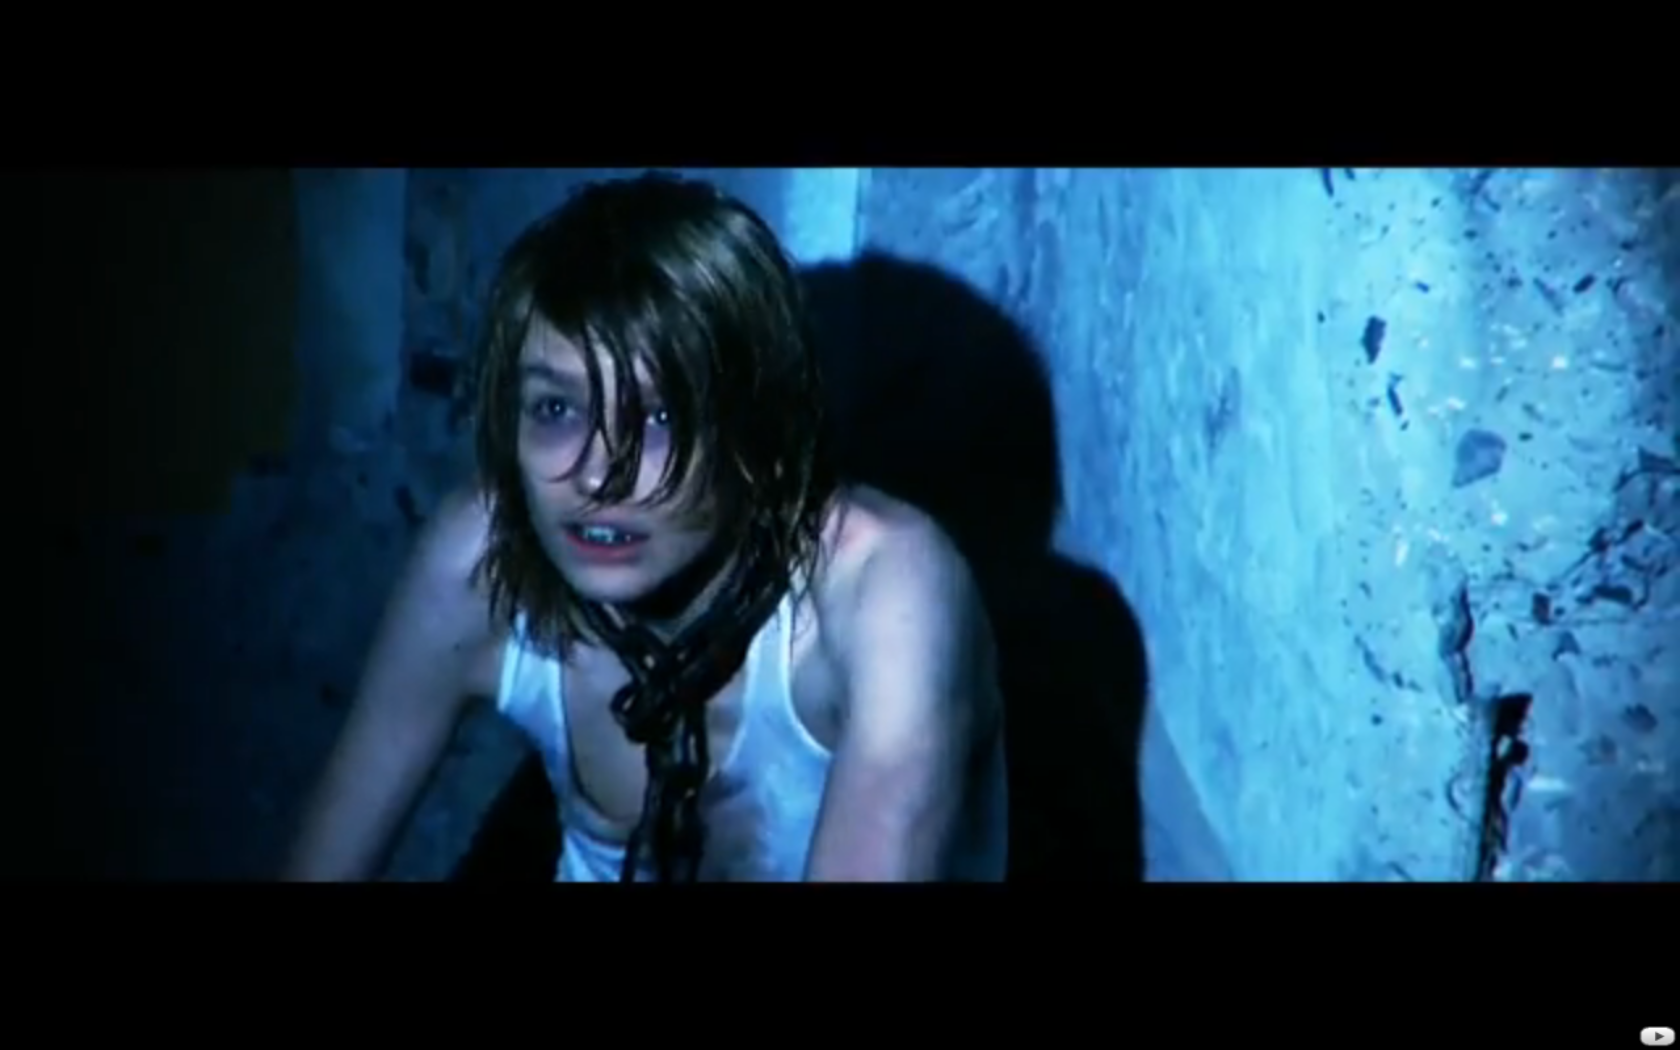 Bild från Crashdiets musikvideo till låten Generation Wild.